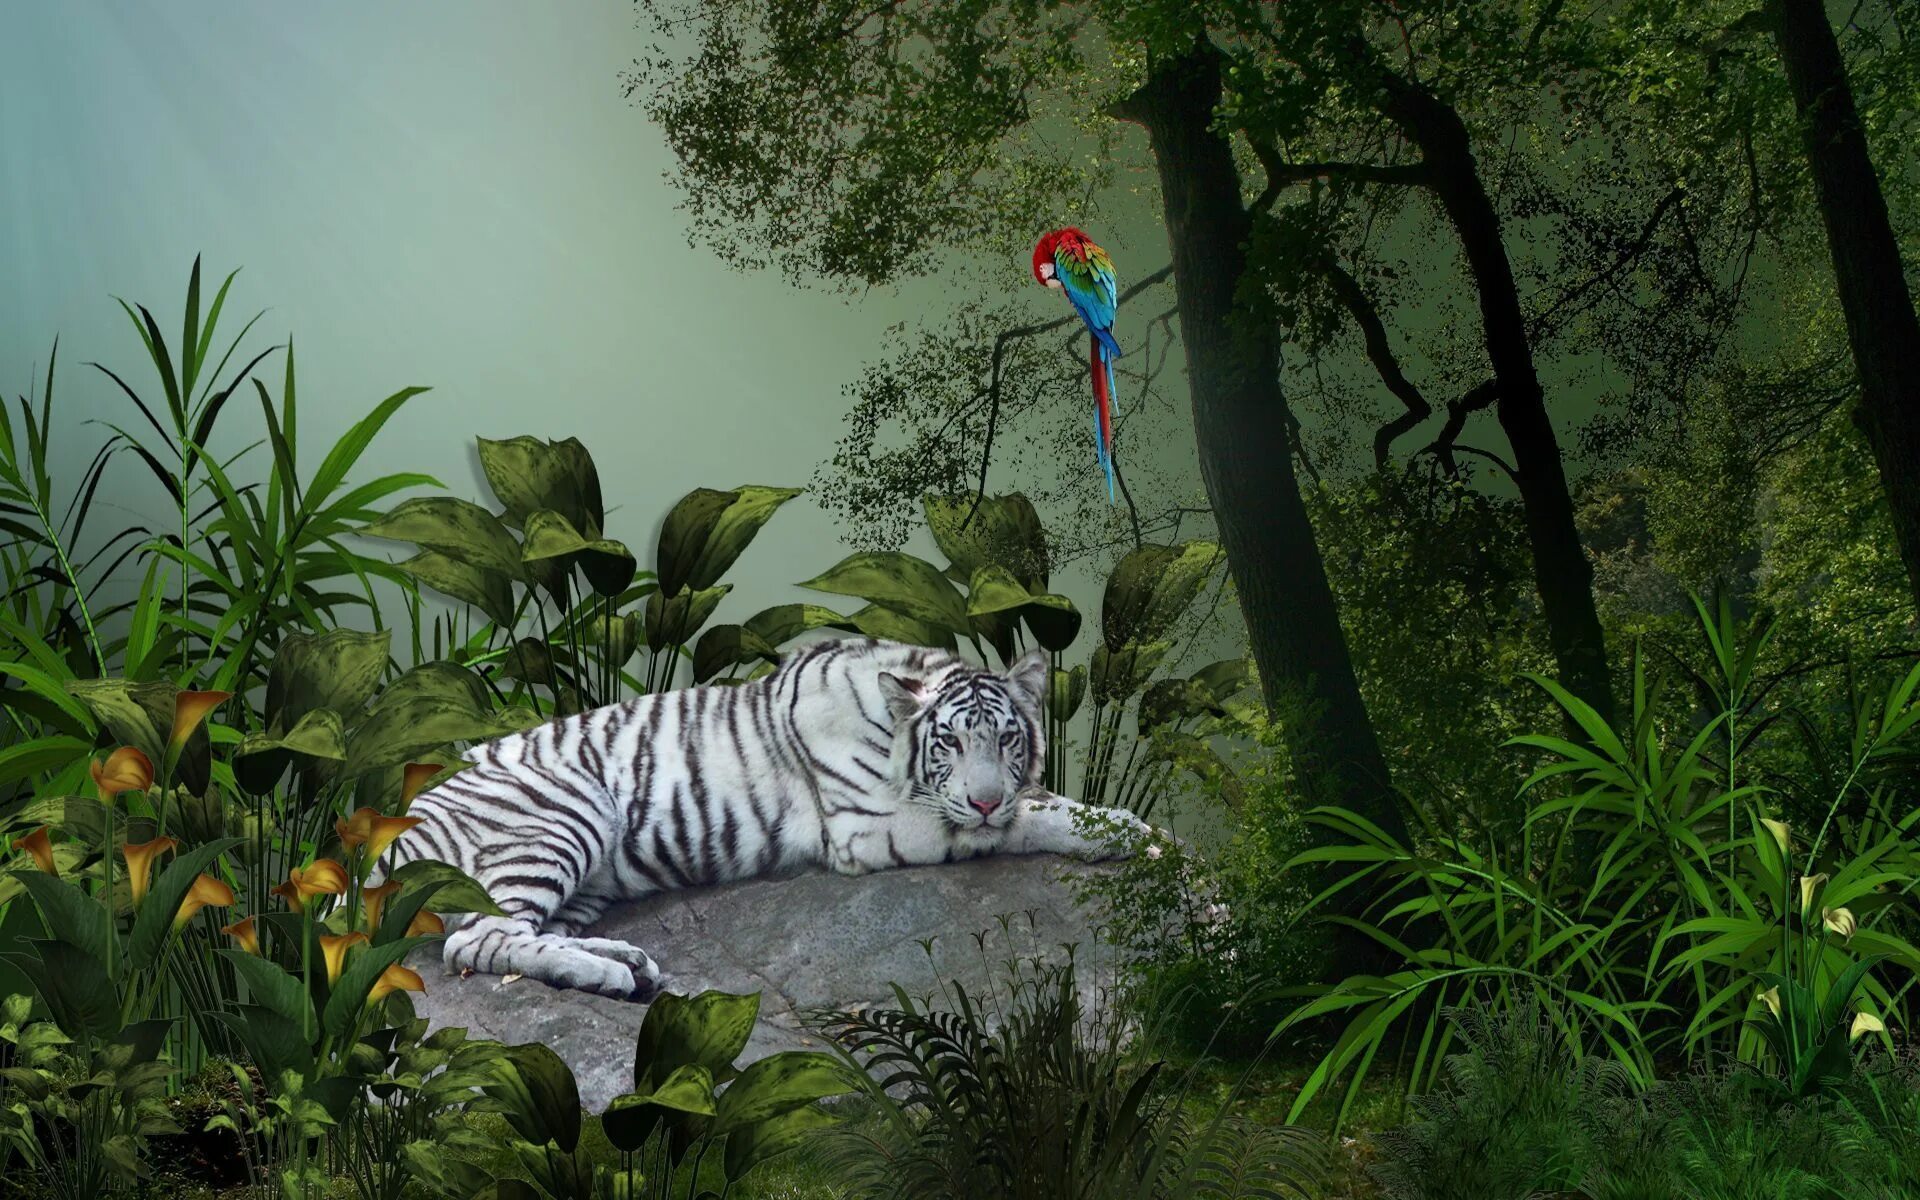 Jungle tiger. Обои джунгли. Животные джунглей. Тигр в джунглях. Фотообои с животными.